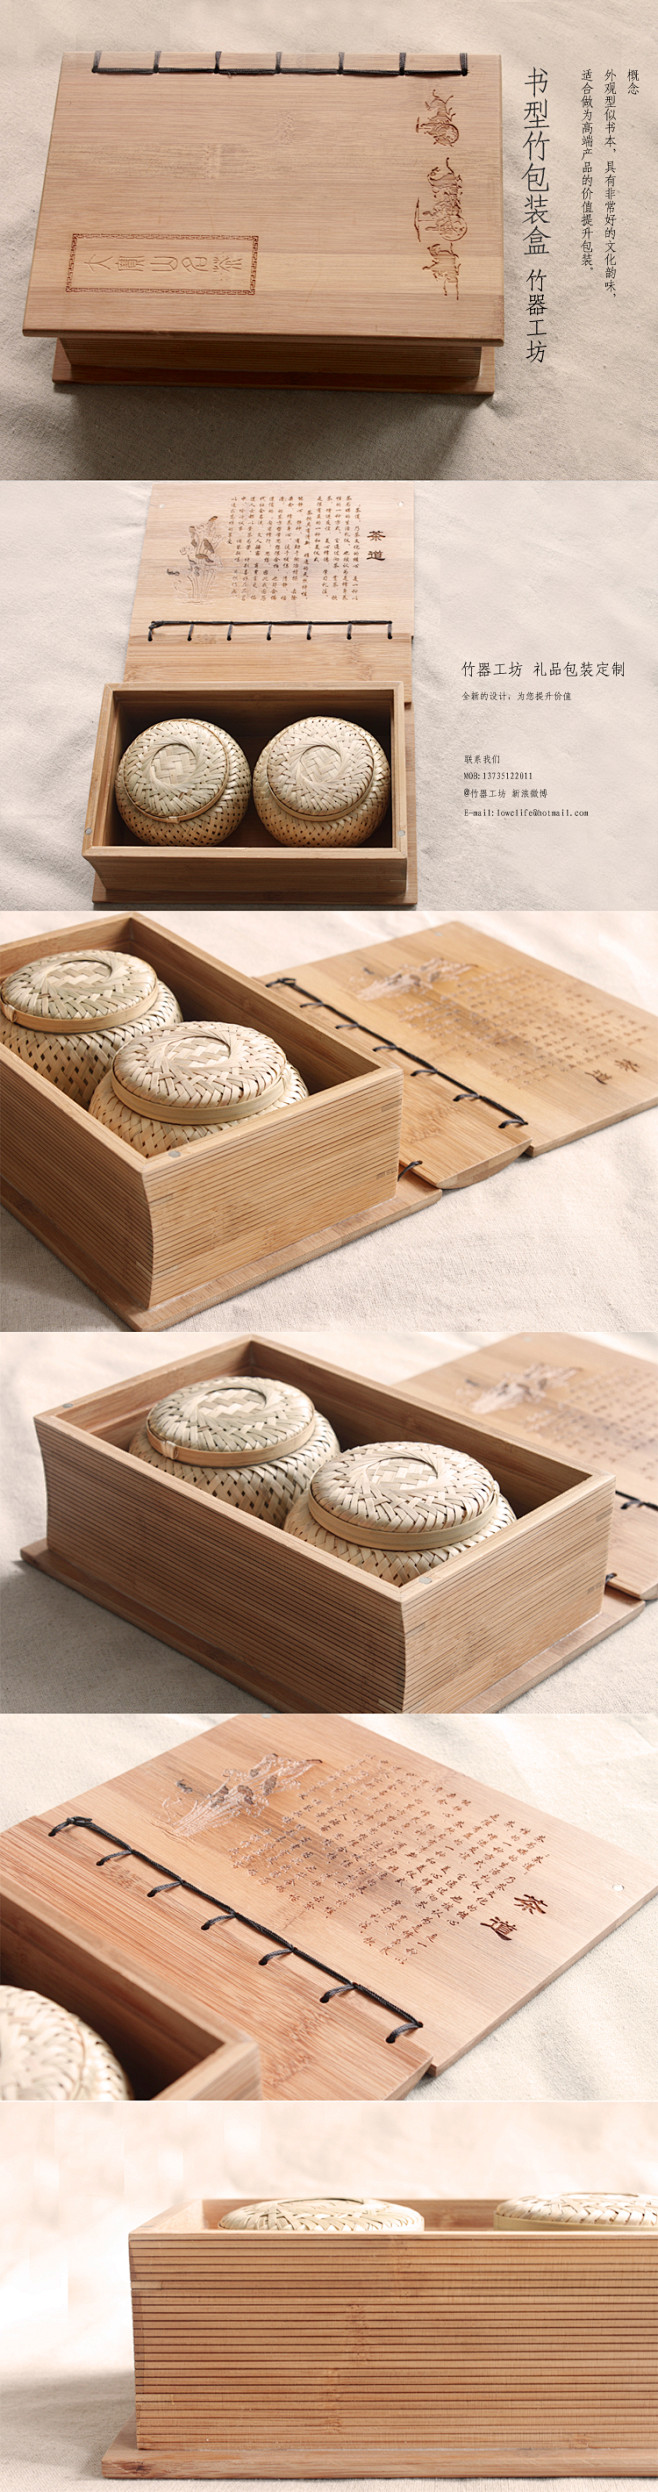 竹盒子 木盒 包装盒 茶叶盒包装 月饼盒...